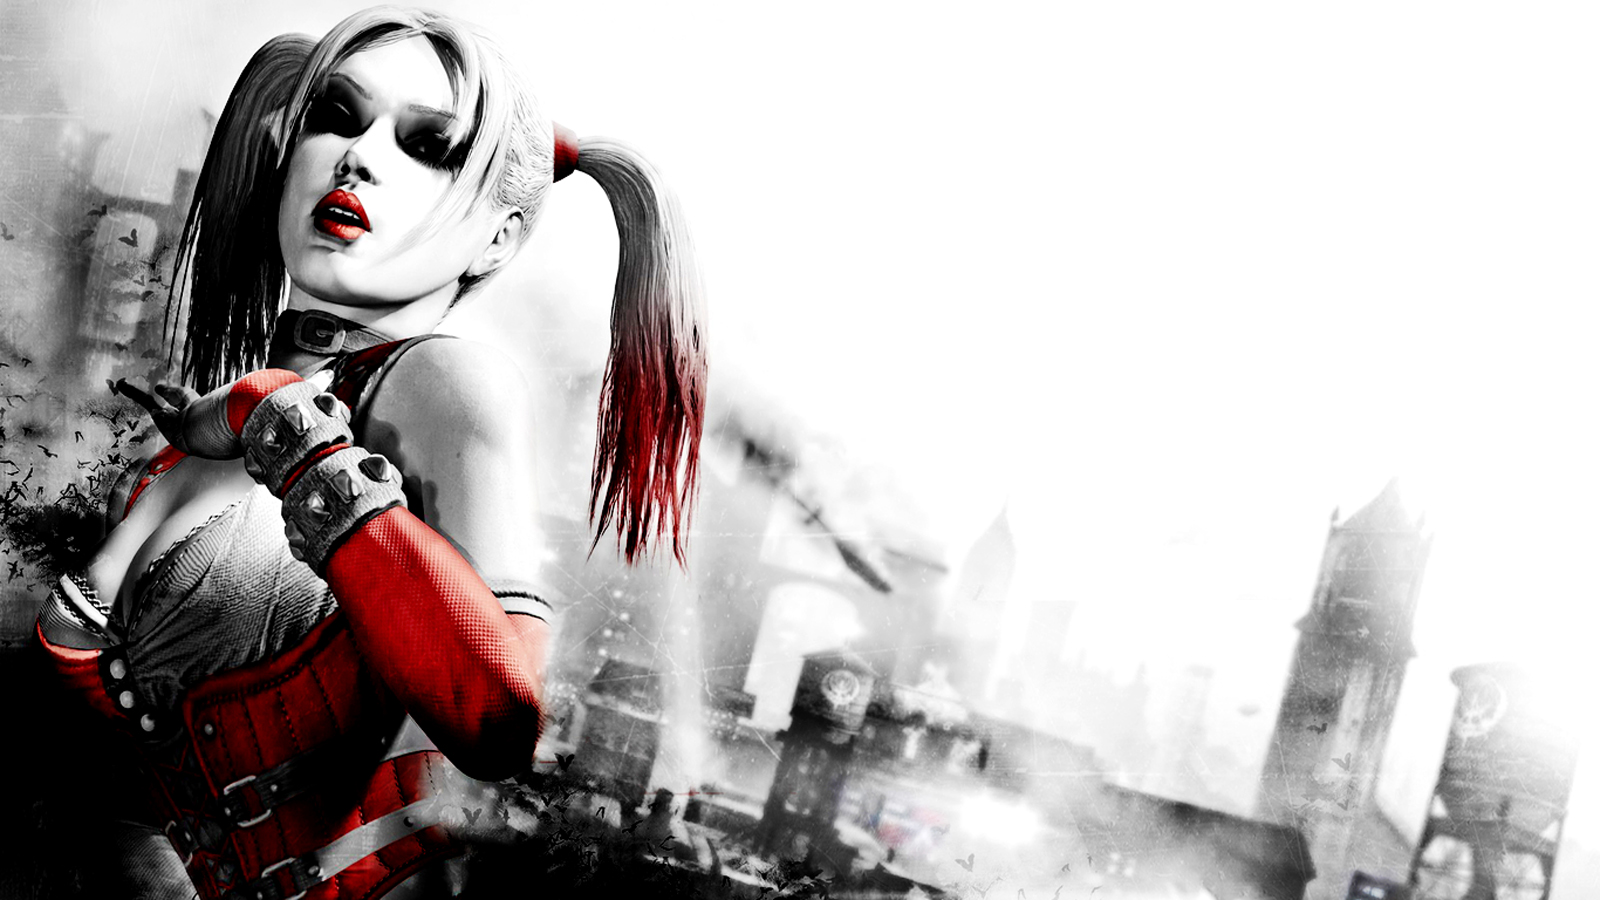 44+] Harley Quinn Wallpaper - WallpaperSafari